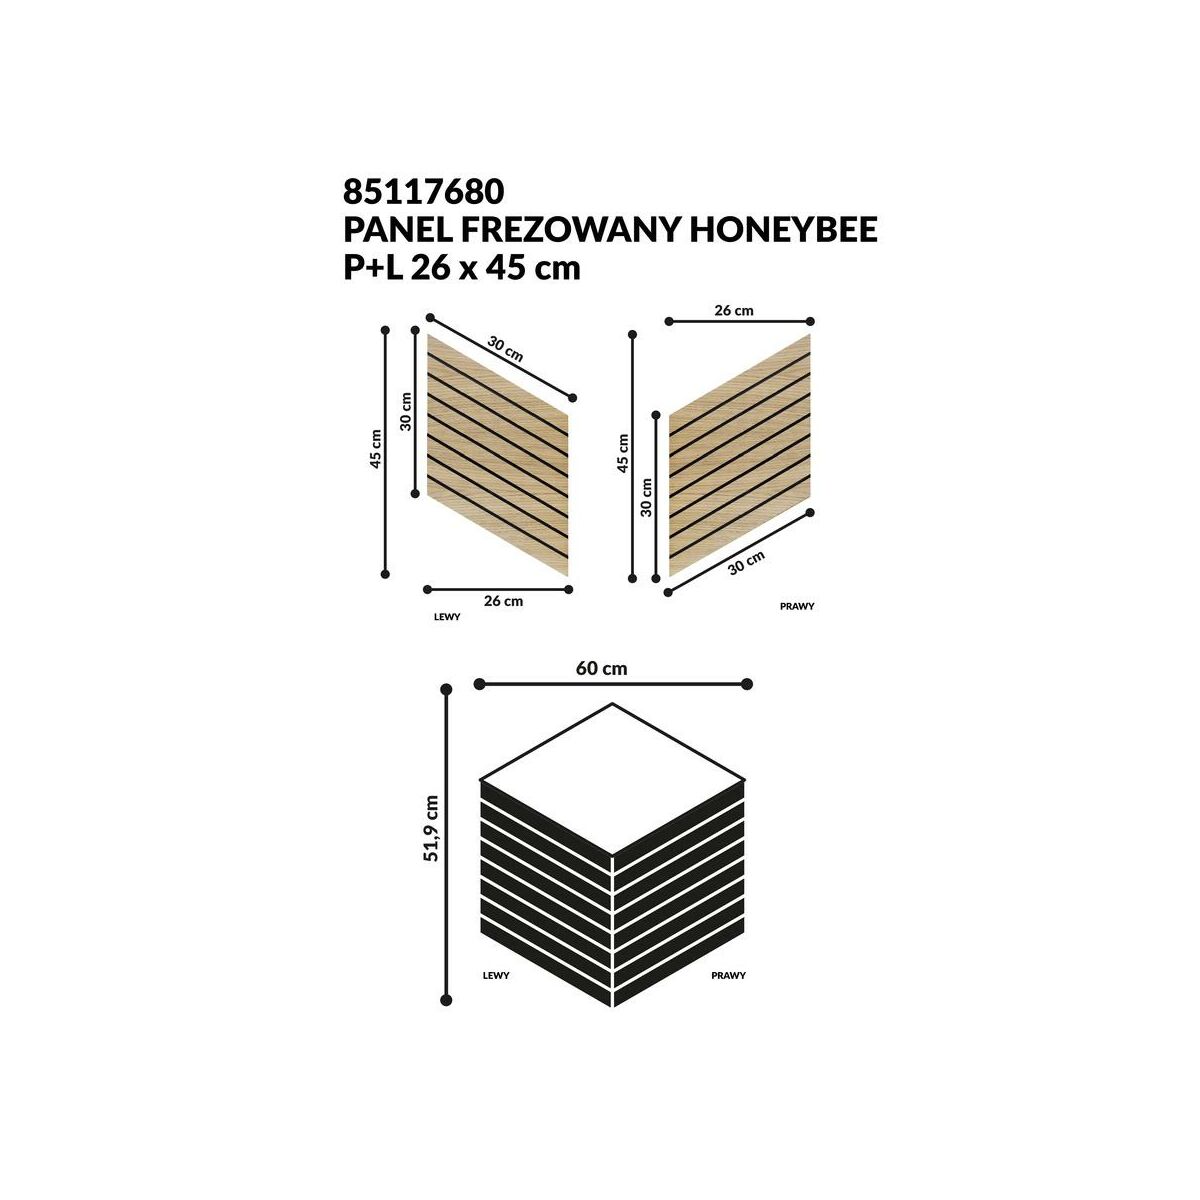 Panel ścienny MDF dekoracyjny Honeybee frezowany prawy i lewy 26x45 cm Fllow